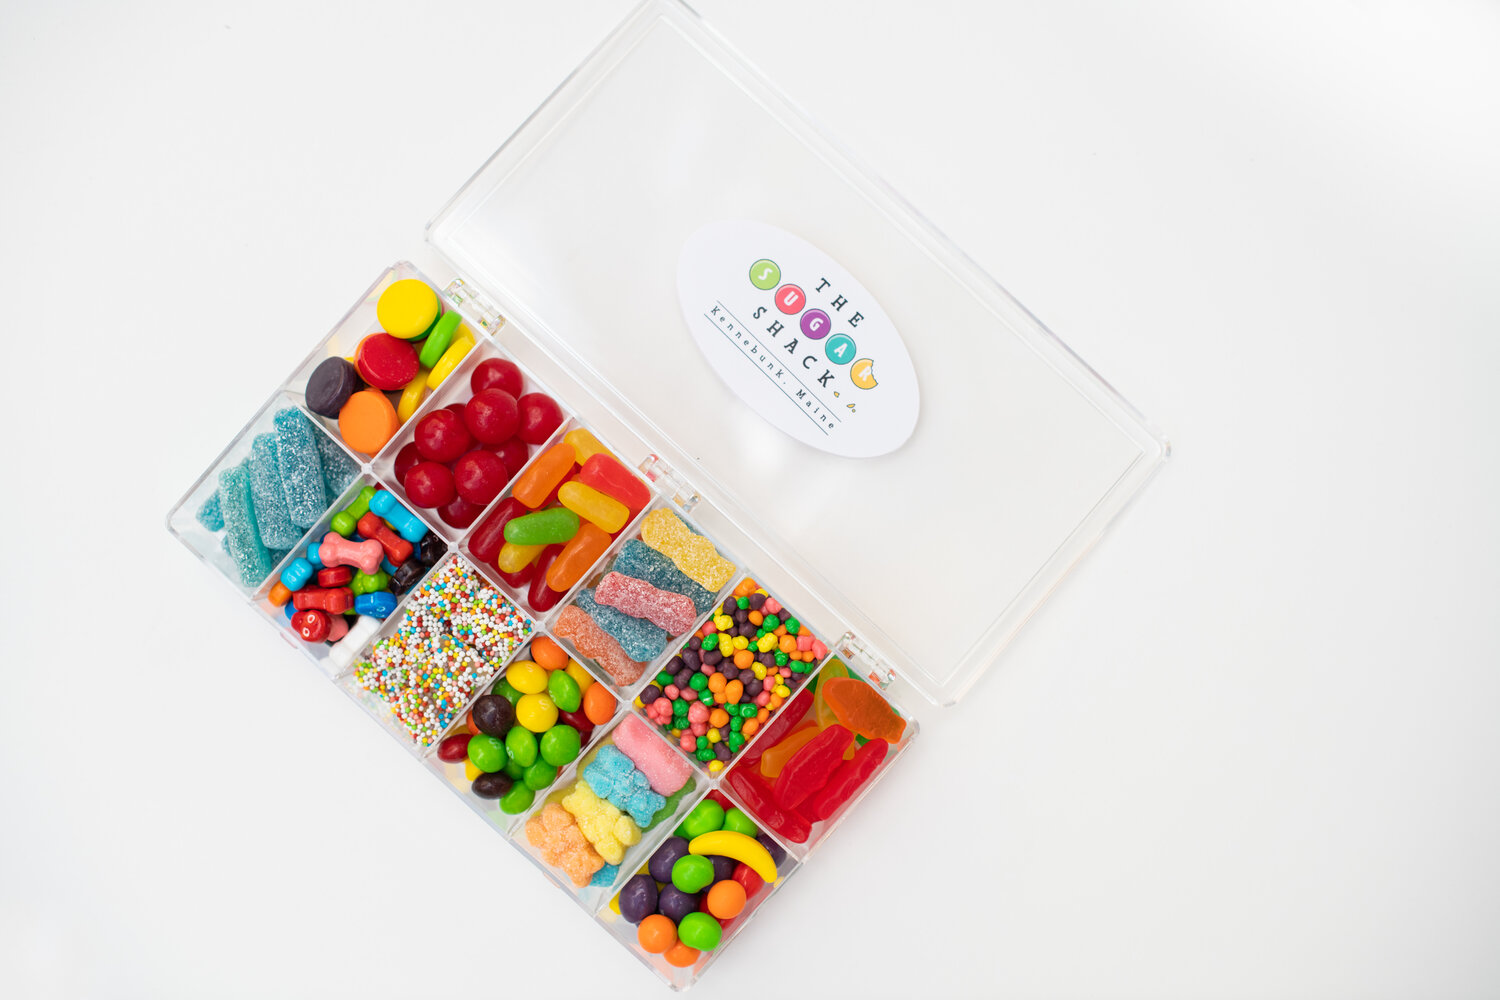 Candy Tackle Box — The Sugar Shack